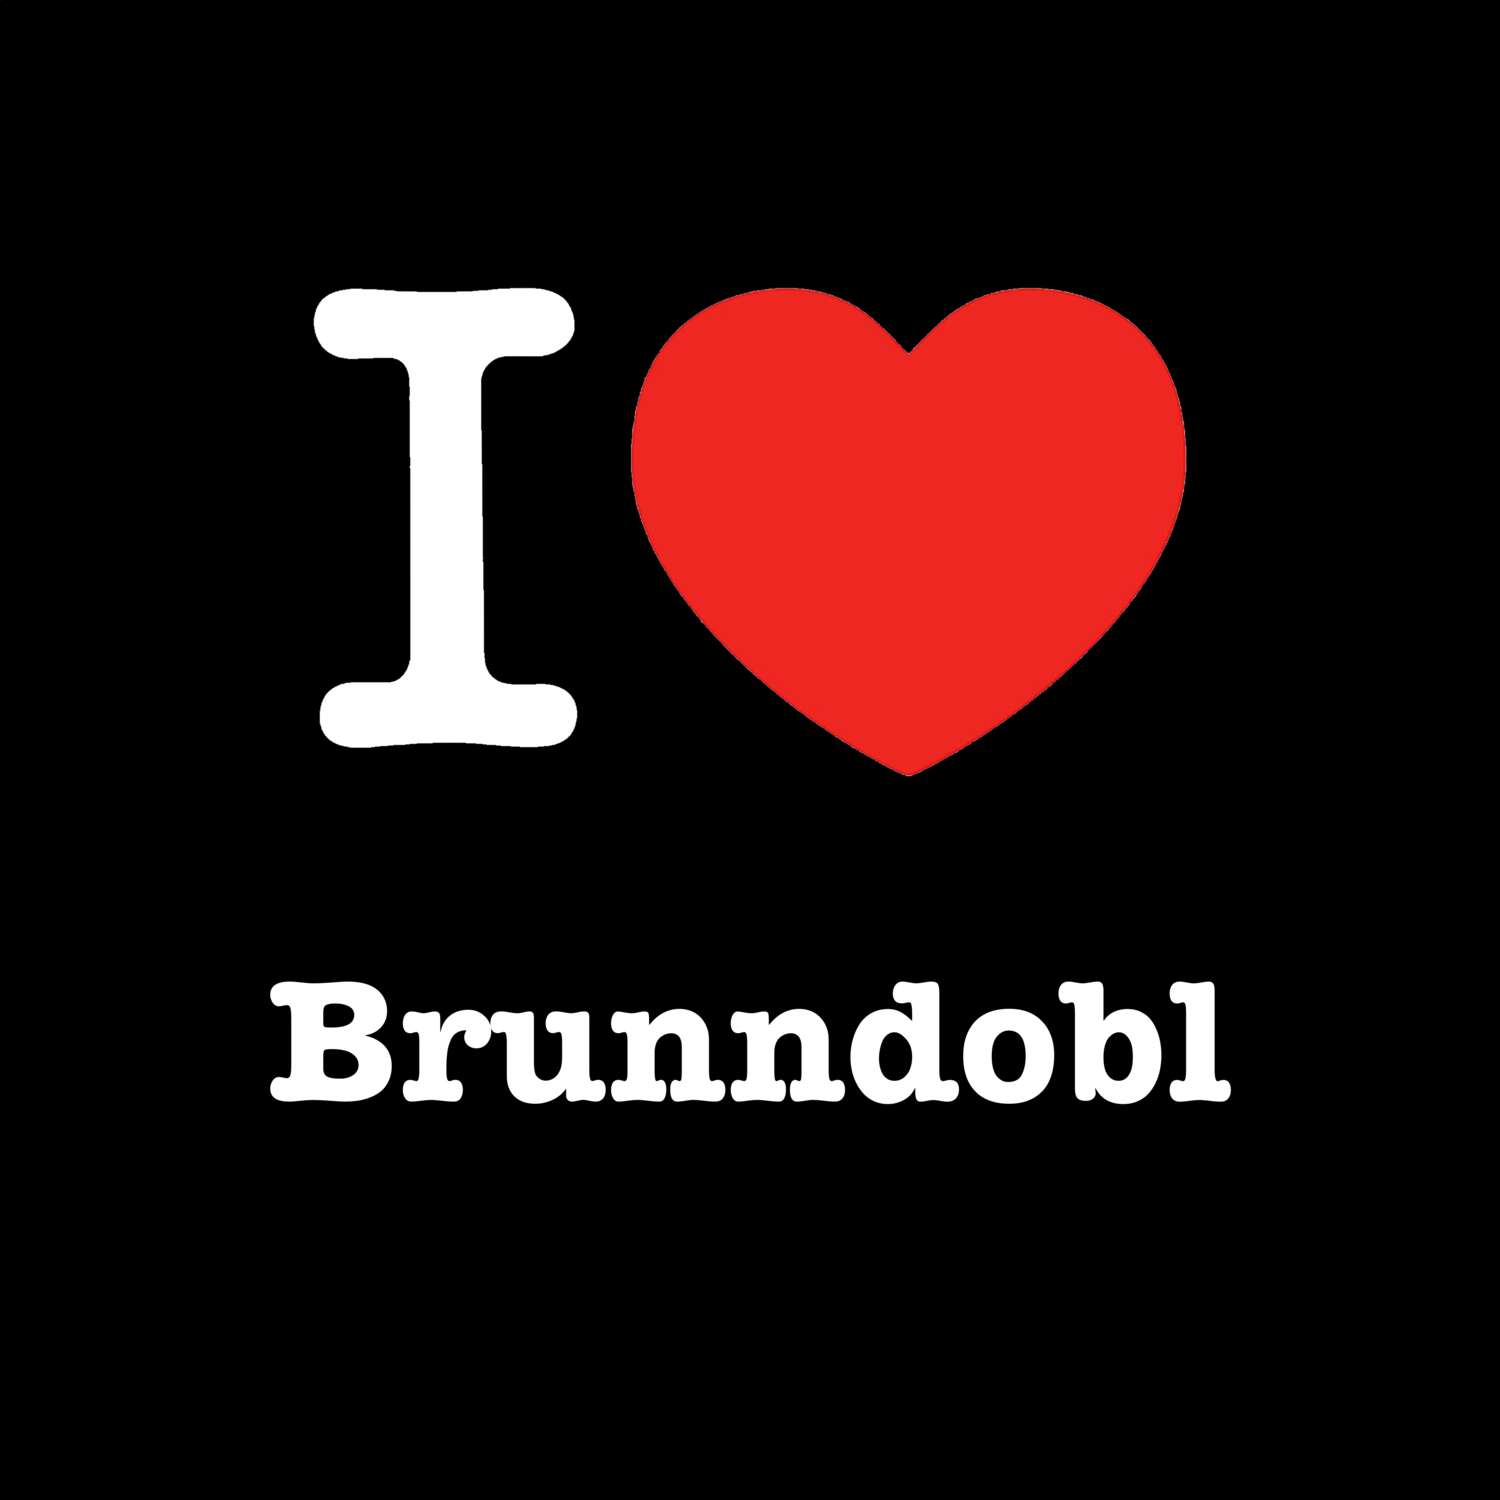 Brunndobl T-Shirt »I love«